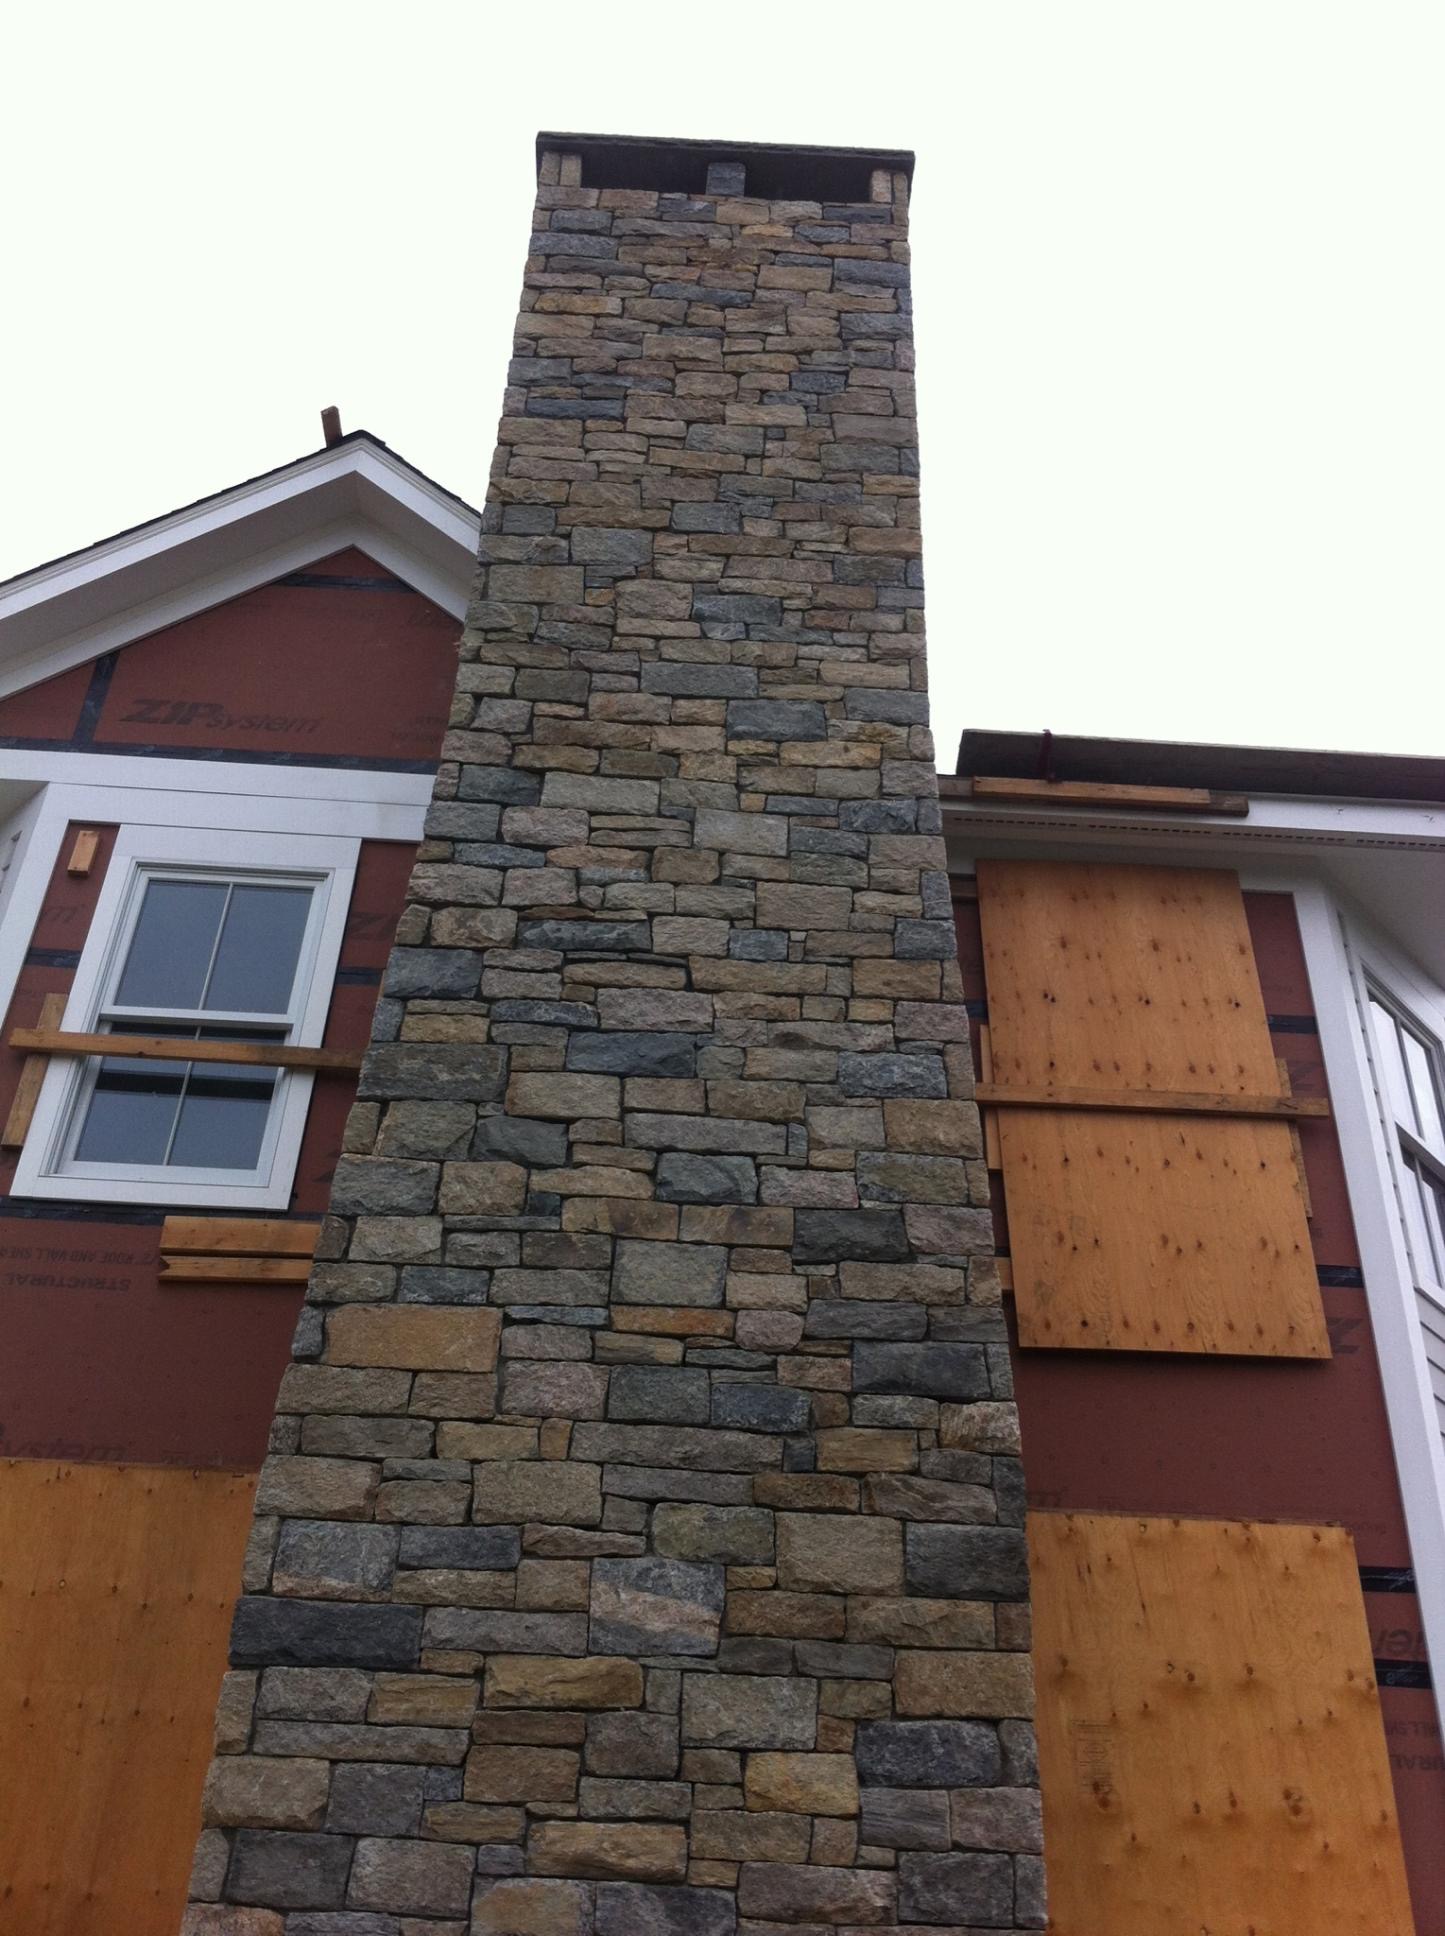 Full stone veneer chimney